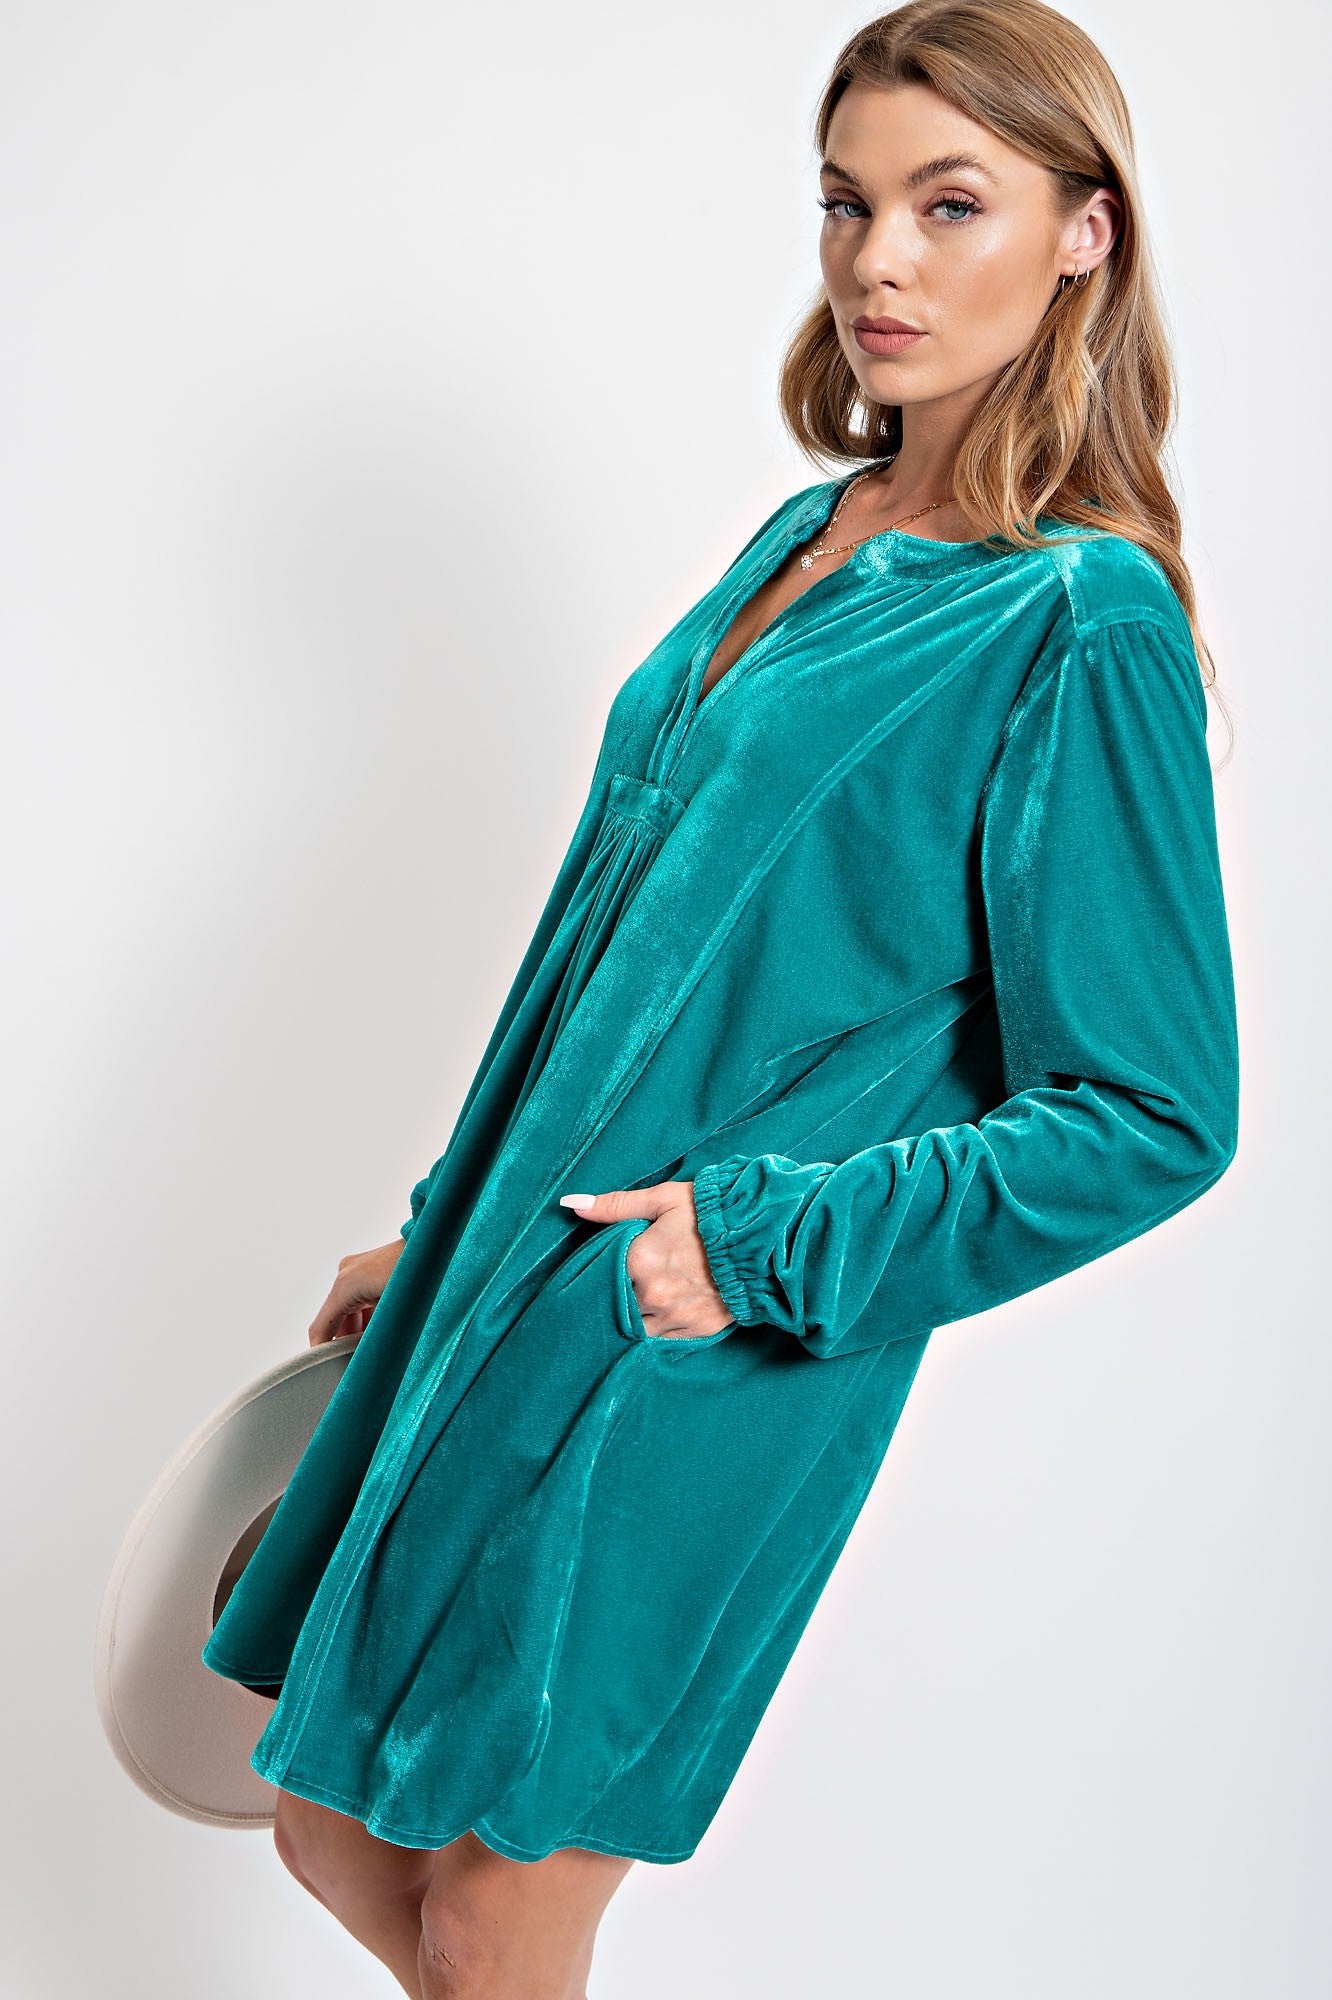 Easel Soft Velvet Tunic Dress in Emerald – June Adel